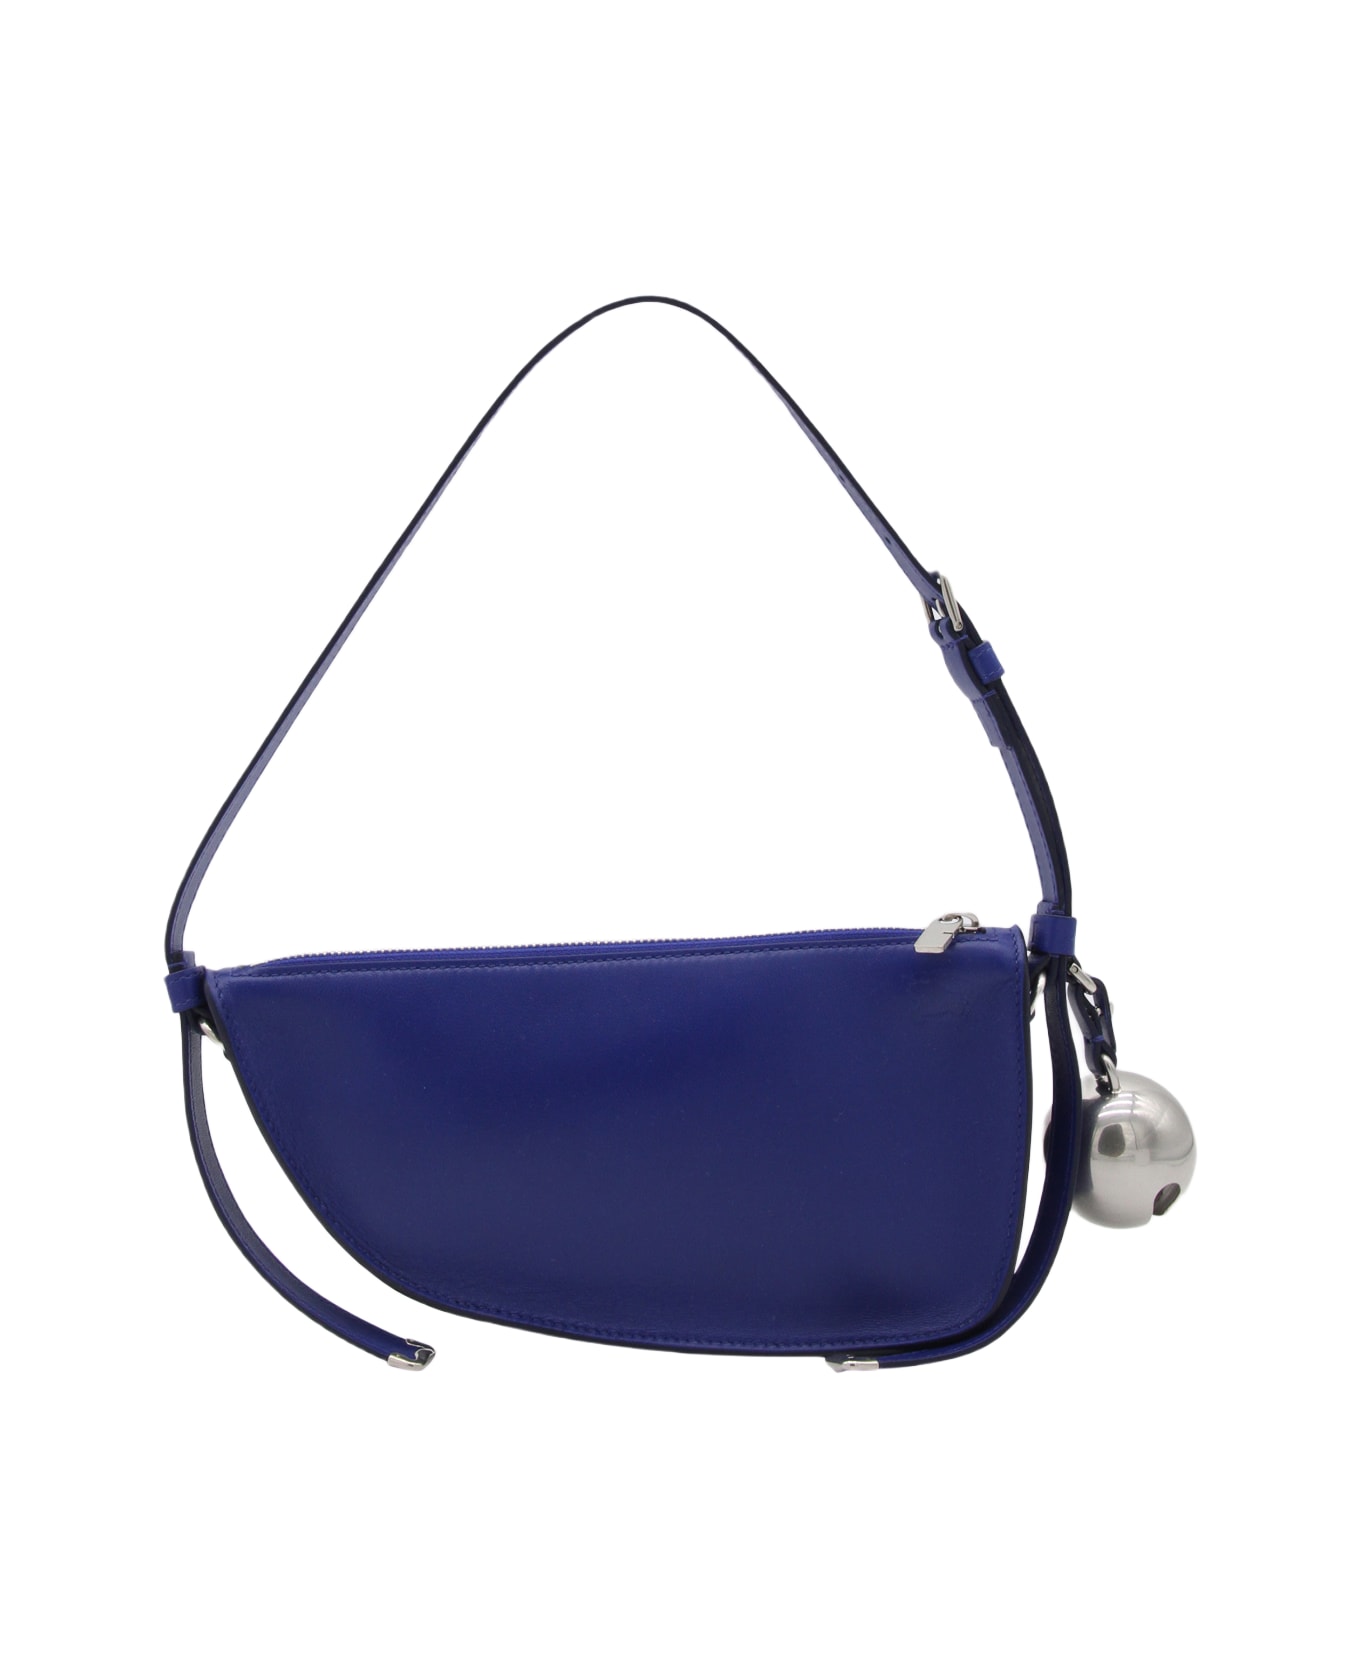 Burberry Dark Blue Shield Leather Shoulder Bag